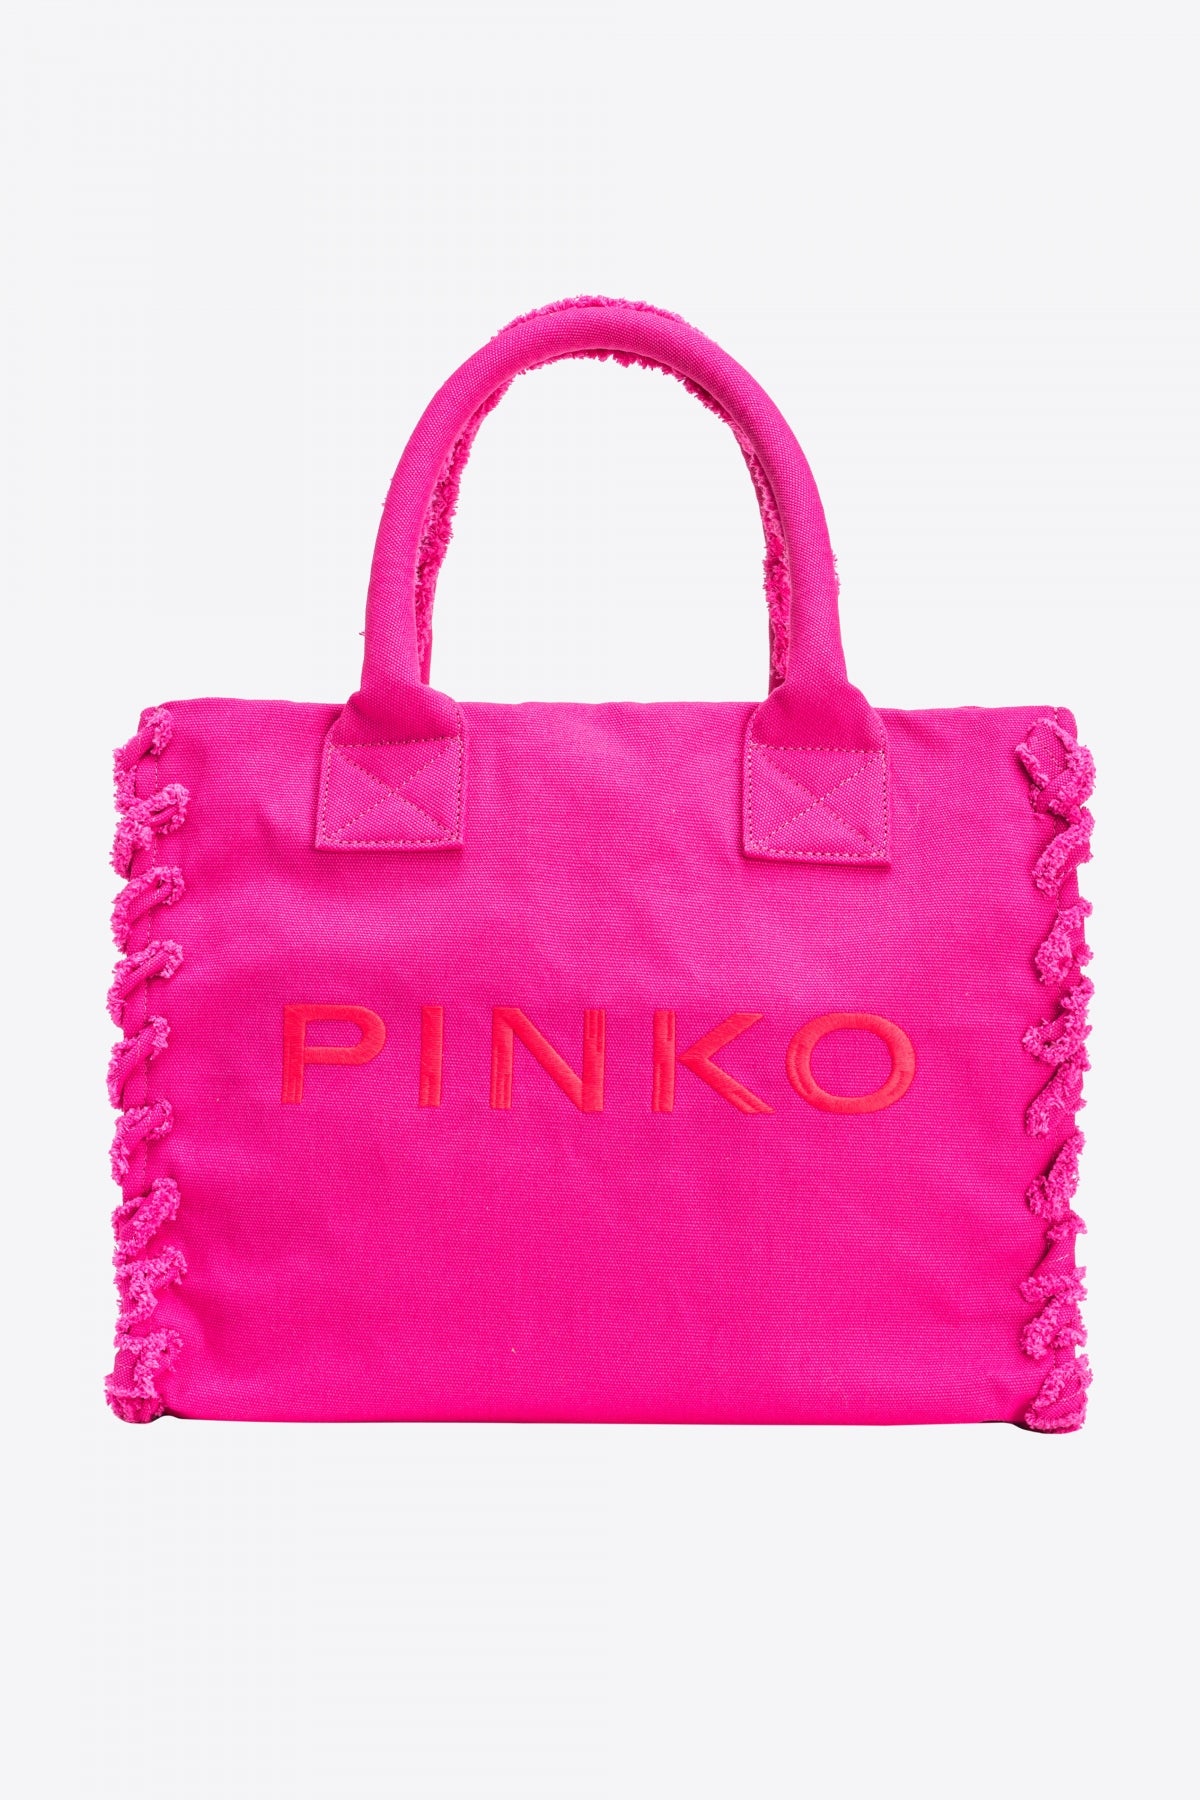 PINKO  BEACH SHOPPING en color ROSA  (1)